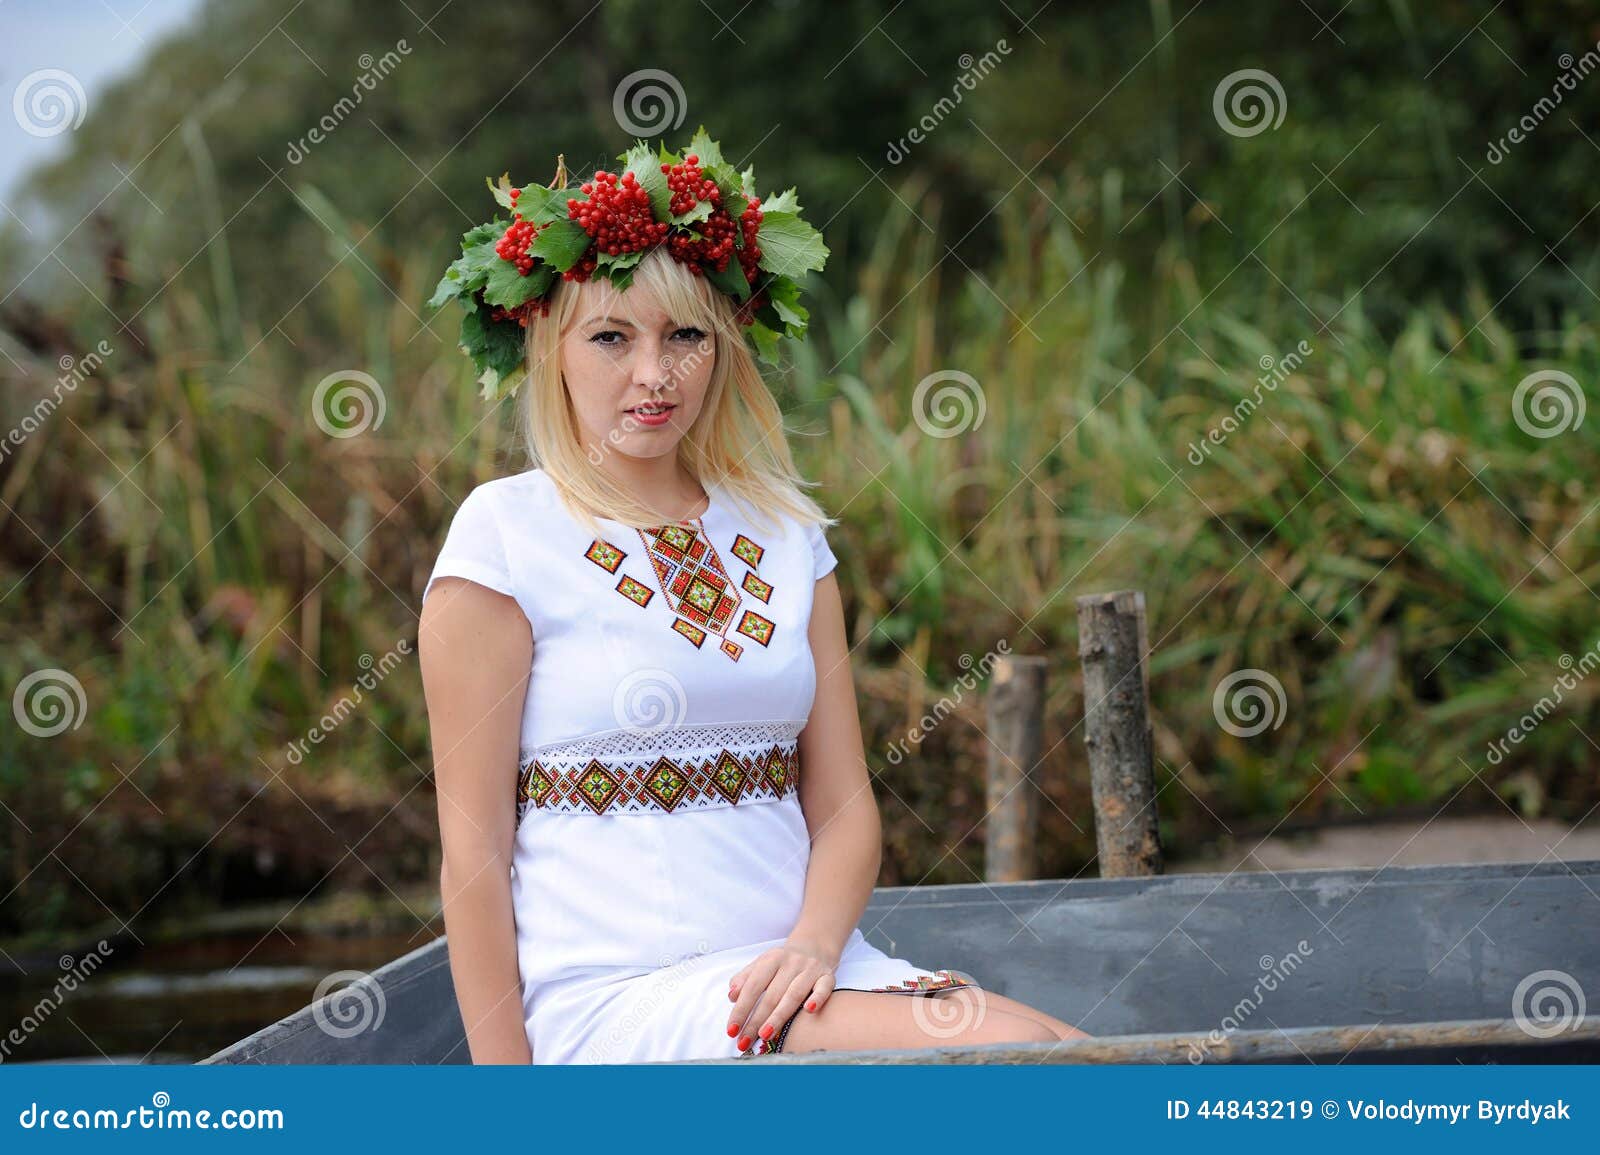 Ukraine Beautiful Women Nbc 15